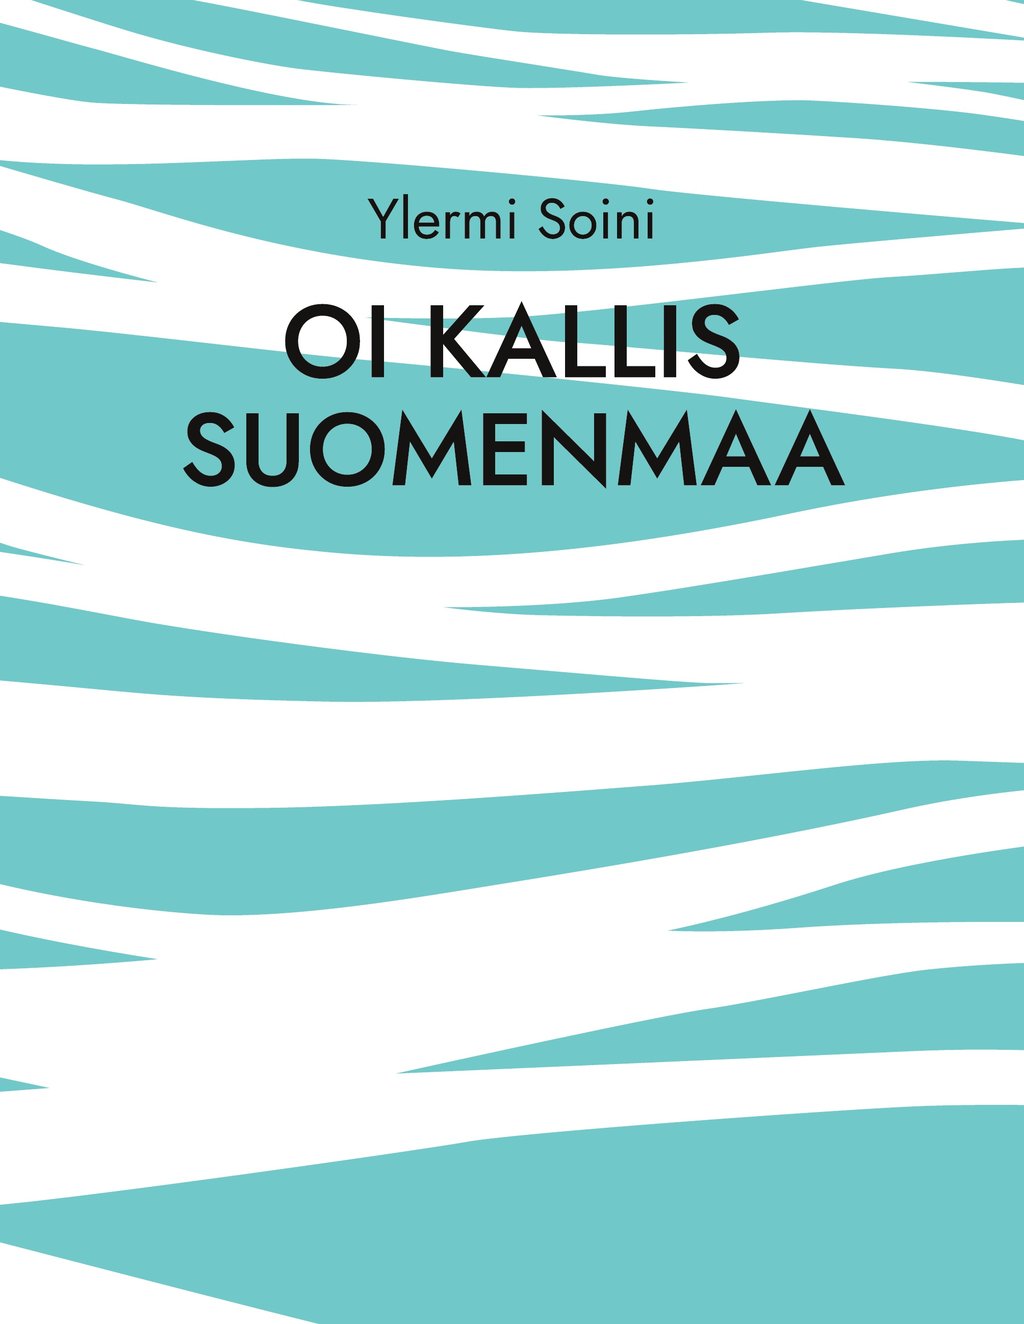 Oi kallis Suomenmaa - 9789528099147 - Ebook sf - fantasy - fantastique -  Ebook policier & imaginaire | Cultura